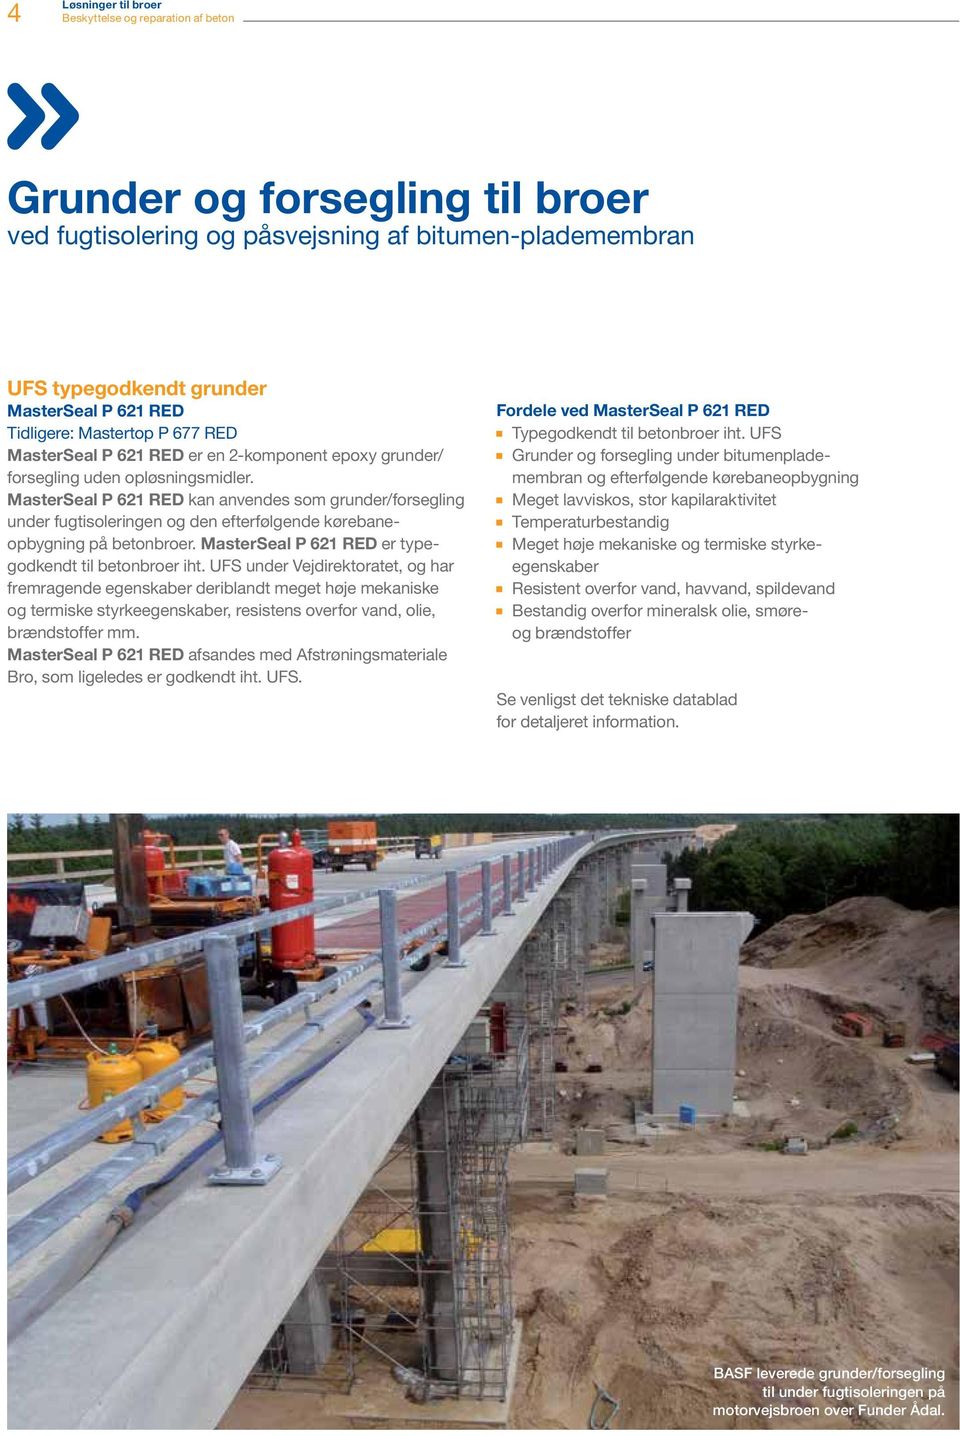 MasterSeal P 621 RED kan anvendes som grunder/forsegling under fugtisoleringen og den efterfølgende kørebaneopbygning på betonbroer. MasterSeal P 621 RED er typegodkendt til betonbroer iht.